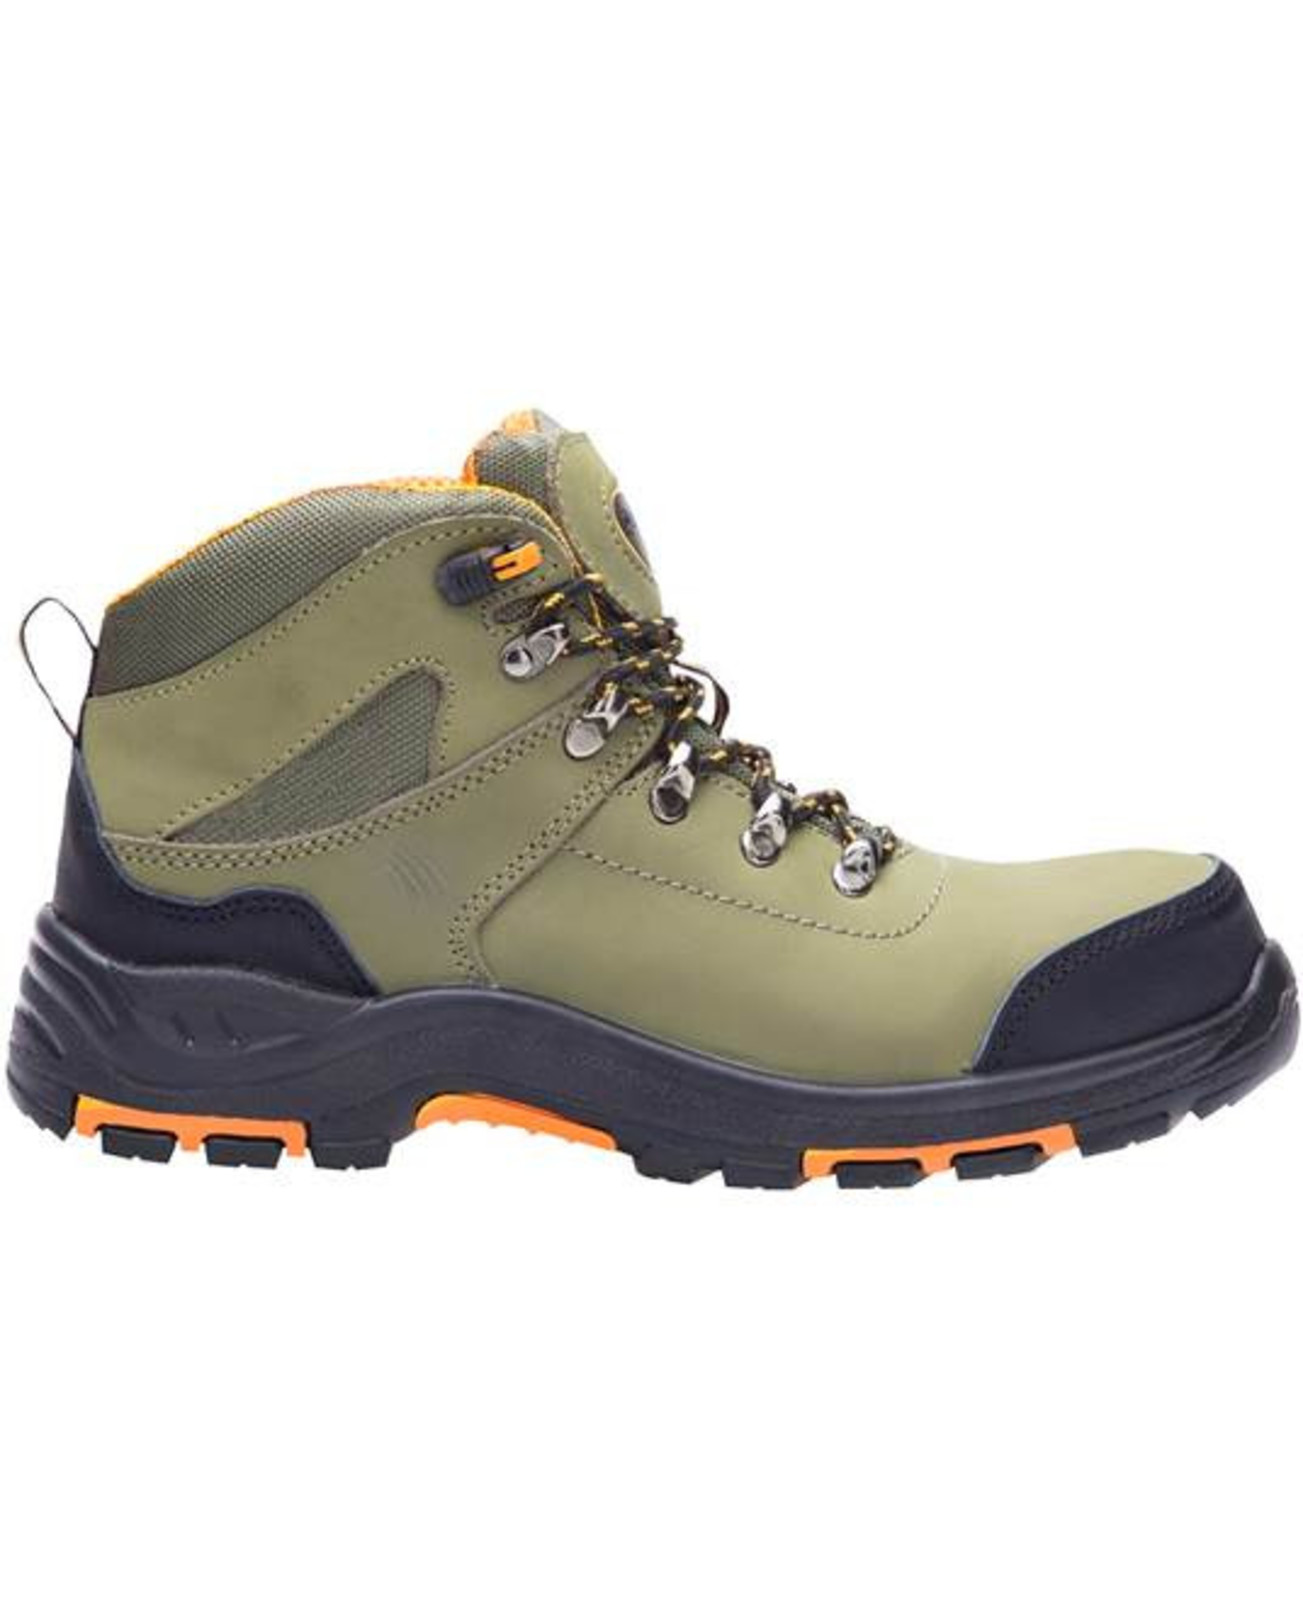 Bezpečnostná členková obuv Ardon Grinder S3 FO HRO SRC - veľkosť: 41, farba: khaki/oranžová